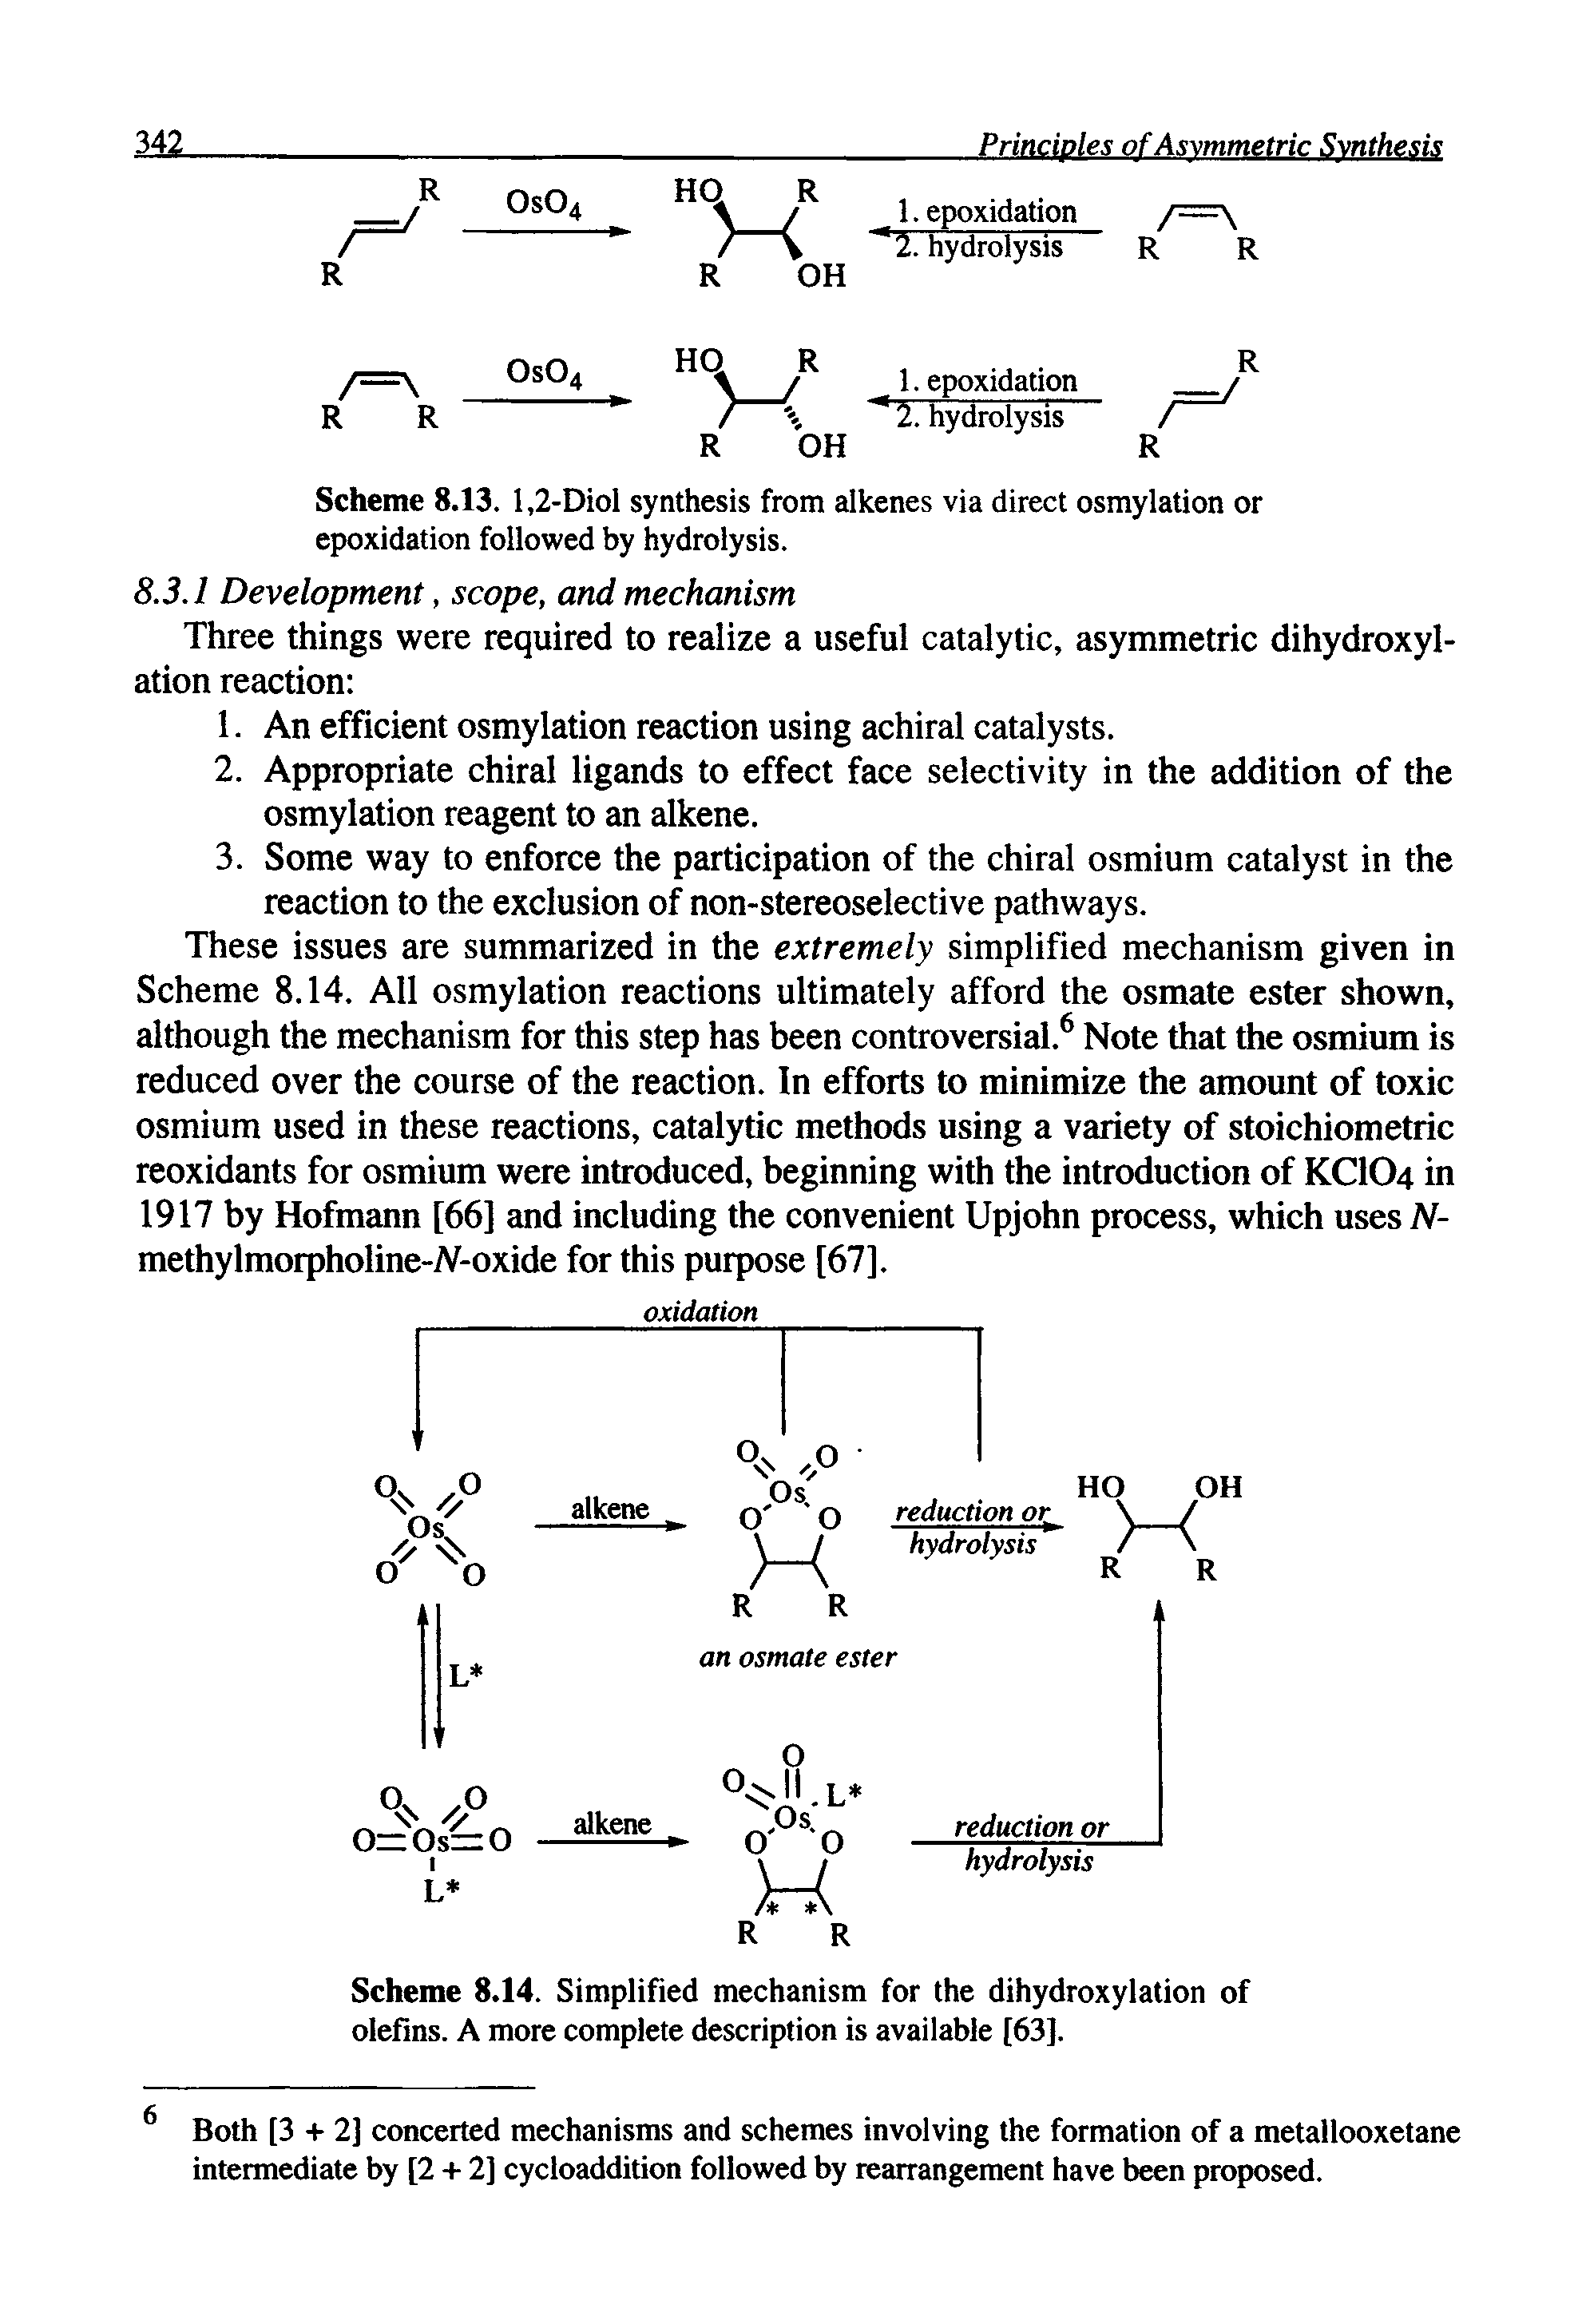 Scheme 8.13. 1,2-Diol synthesis from alkenes via direct osmylation or epoxidation followed by hydrolysis.